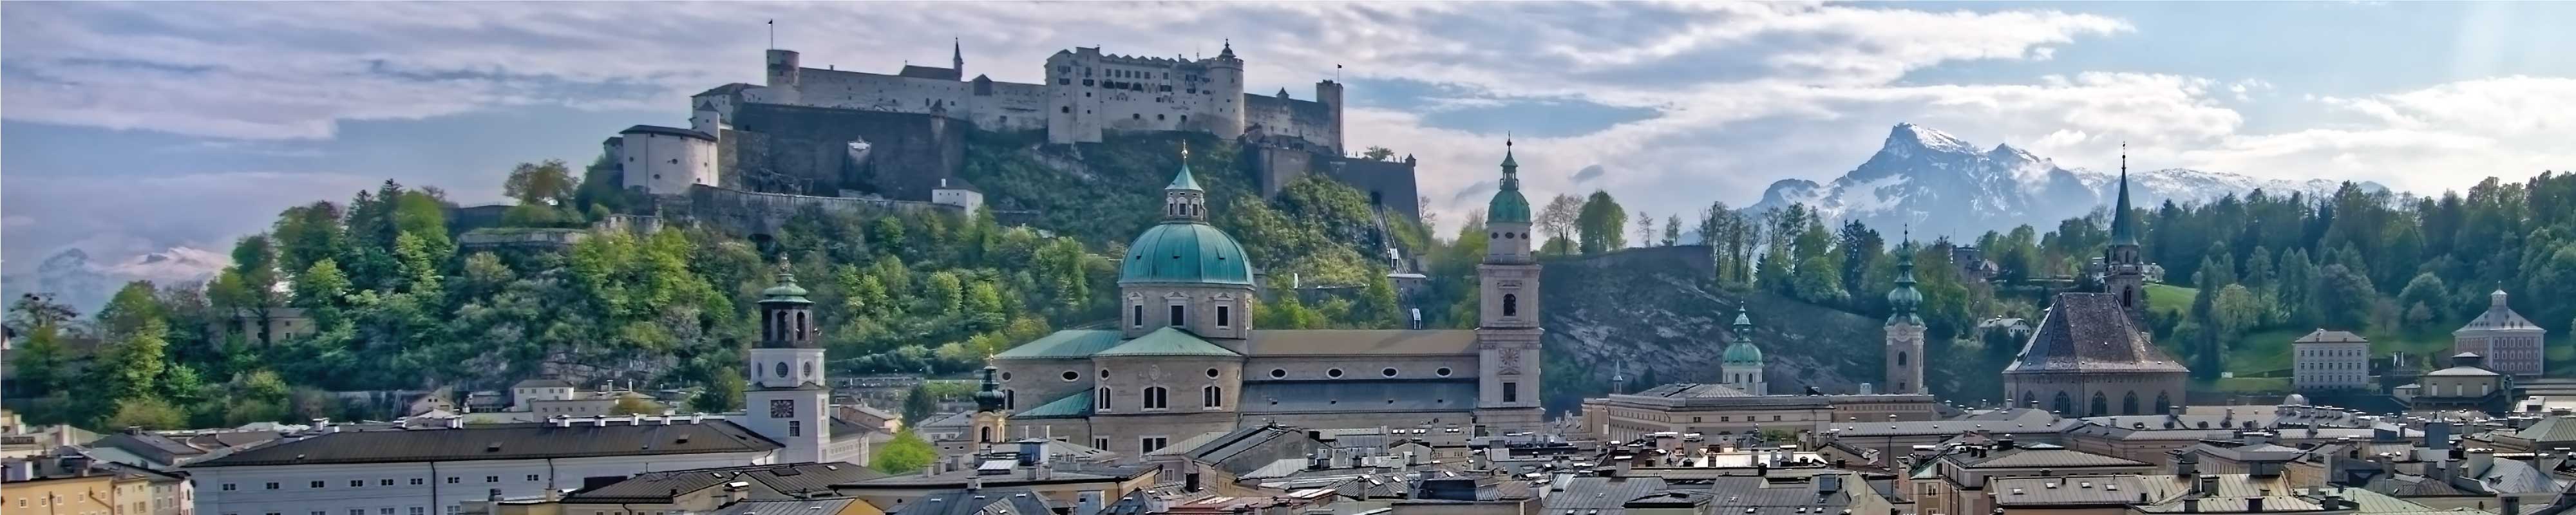 Gepäckaufbewahrung | Esch in Salzburg - Nannybag